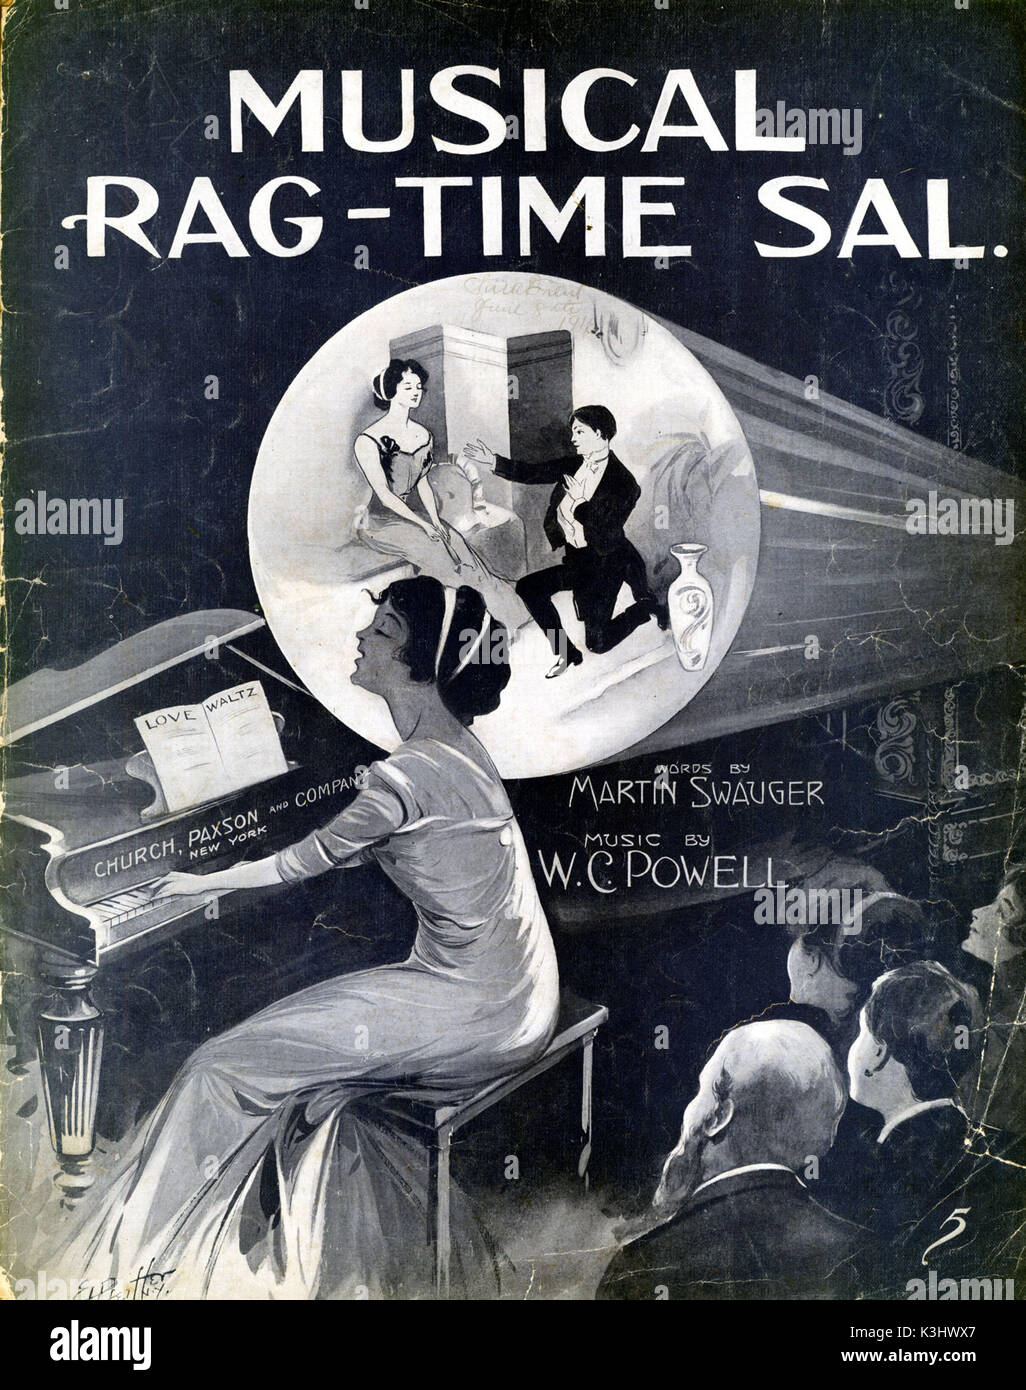 MUSICAL RAG-TIME SAL Stock Photo